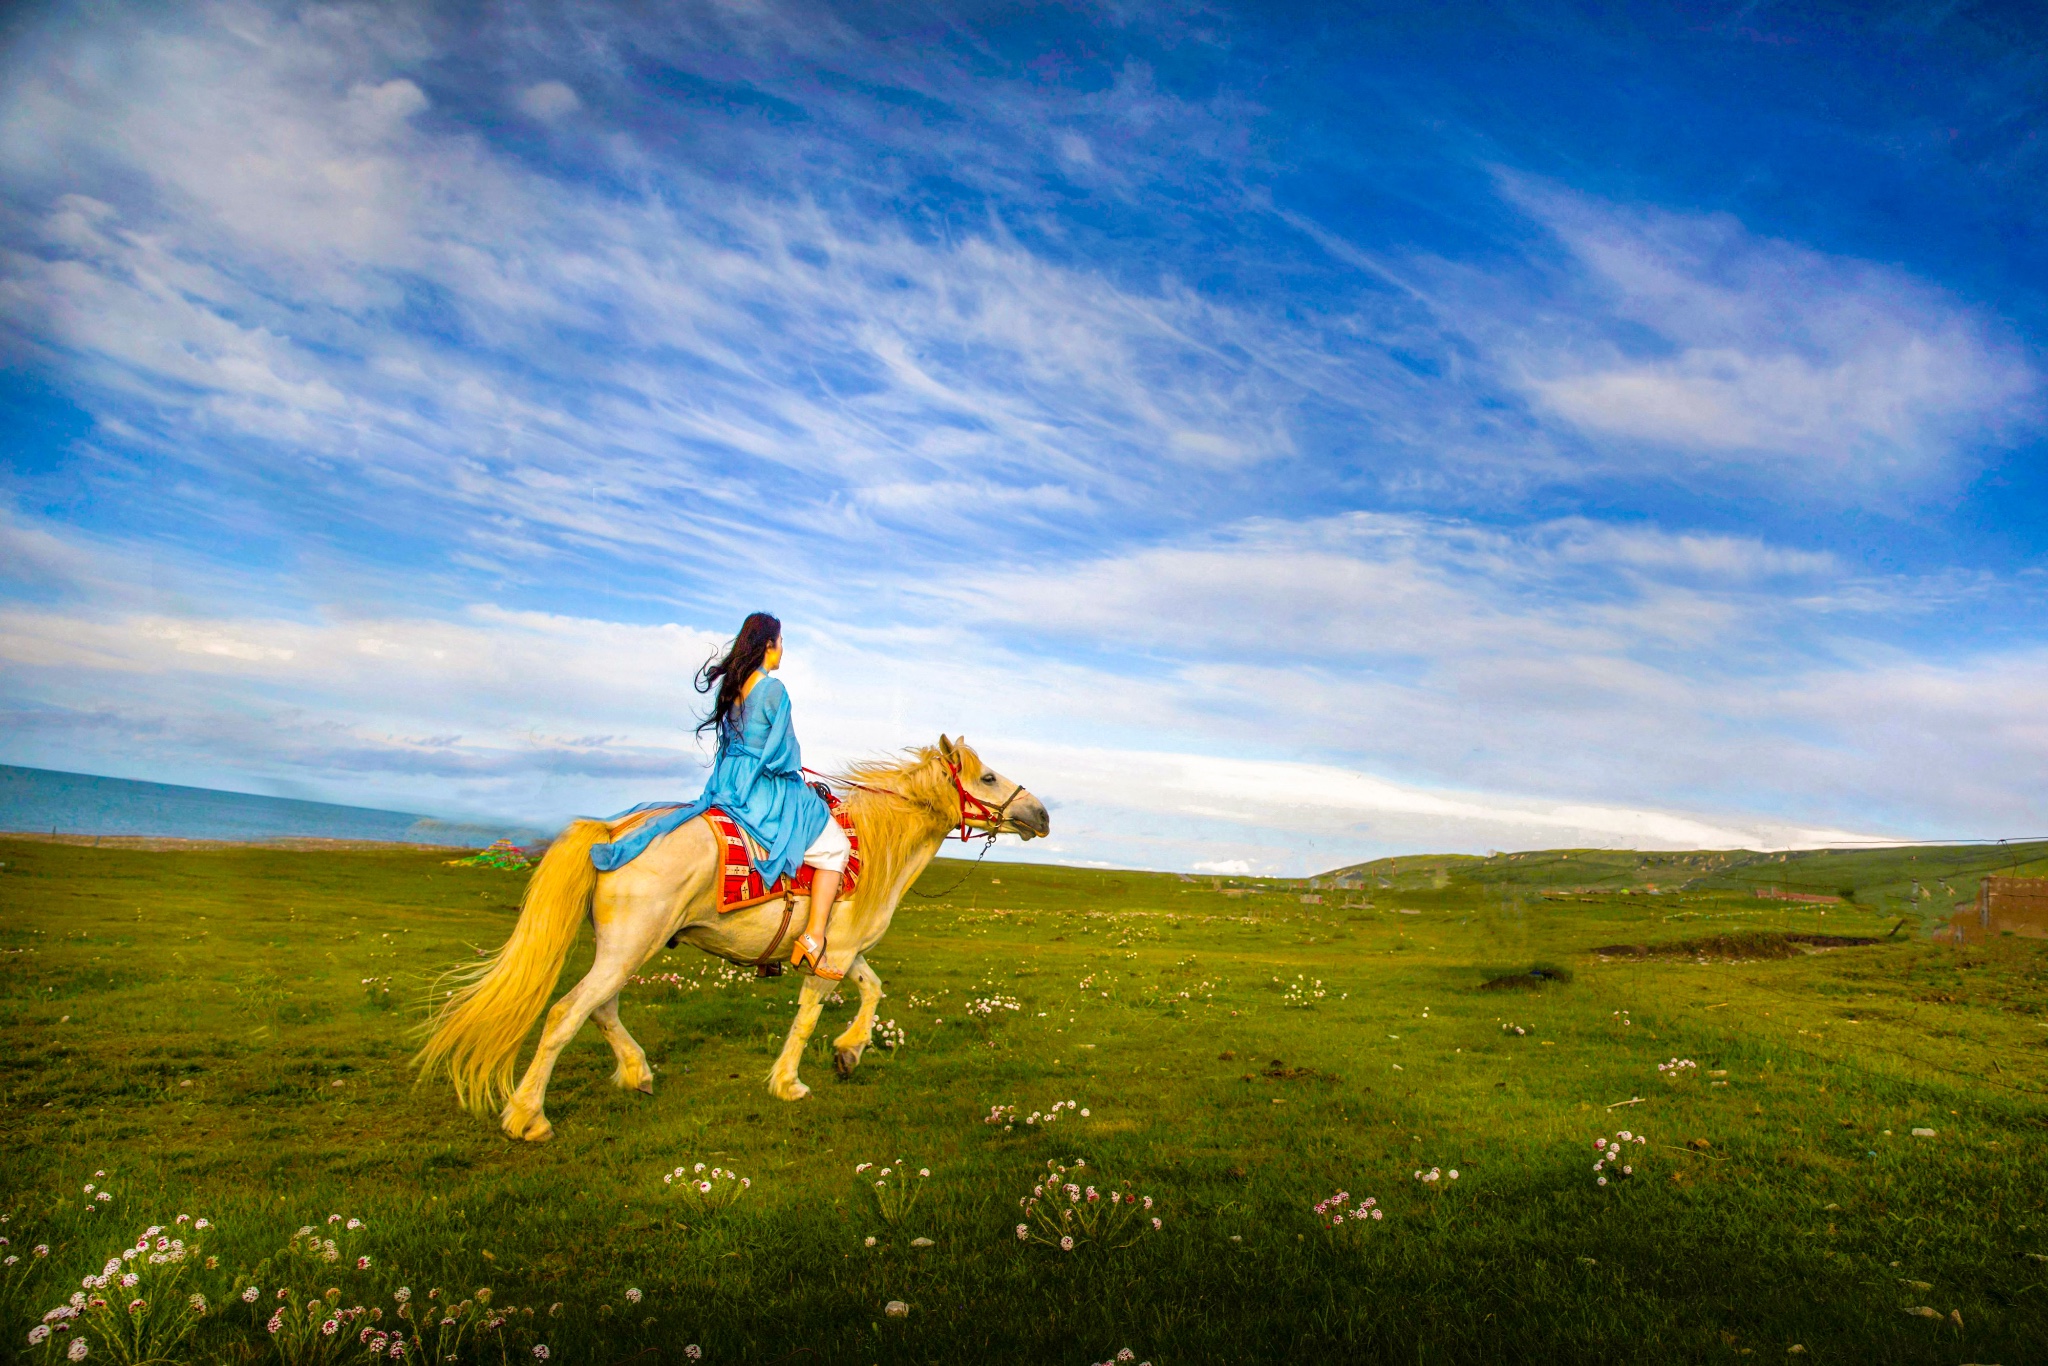 而呼伦贝尔大草原更是世界四大草原之一,而呼伦贝尔最适合骑马的地方